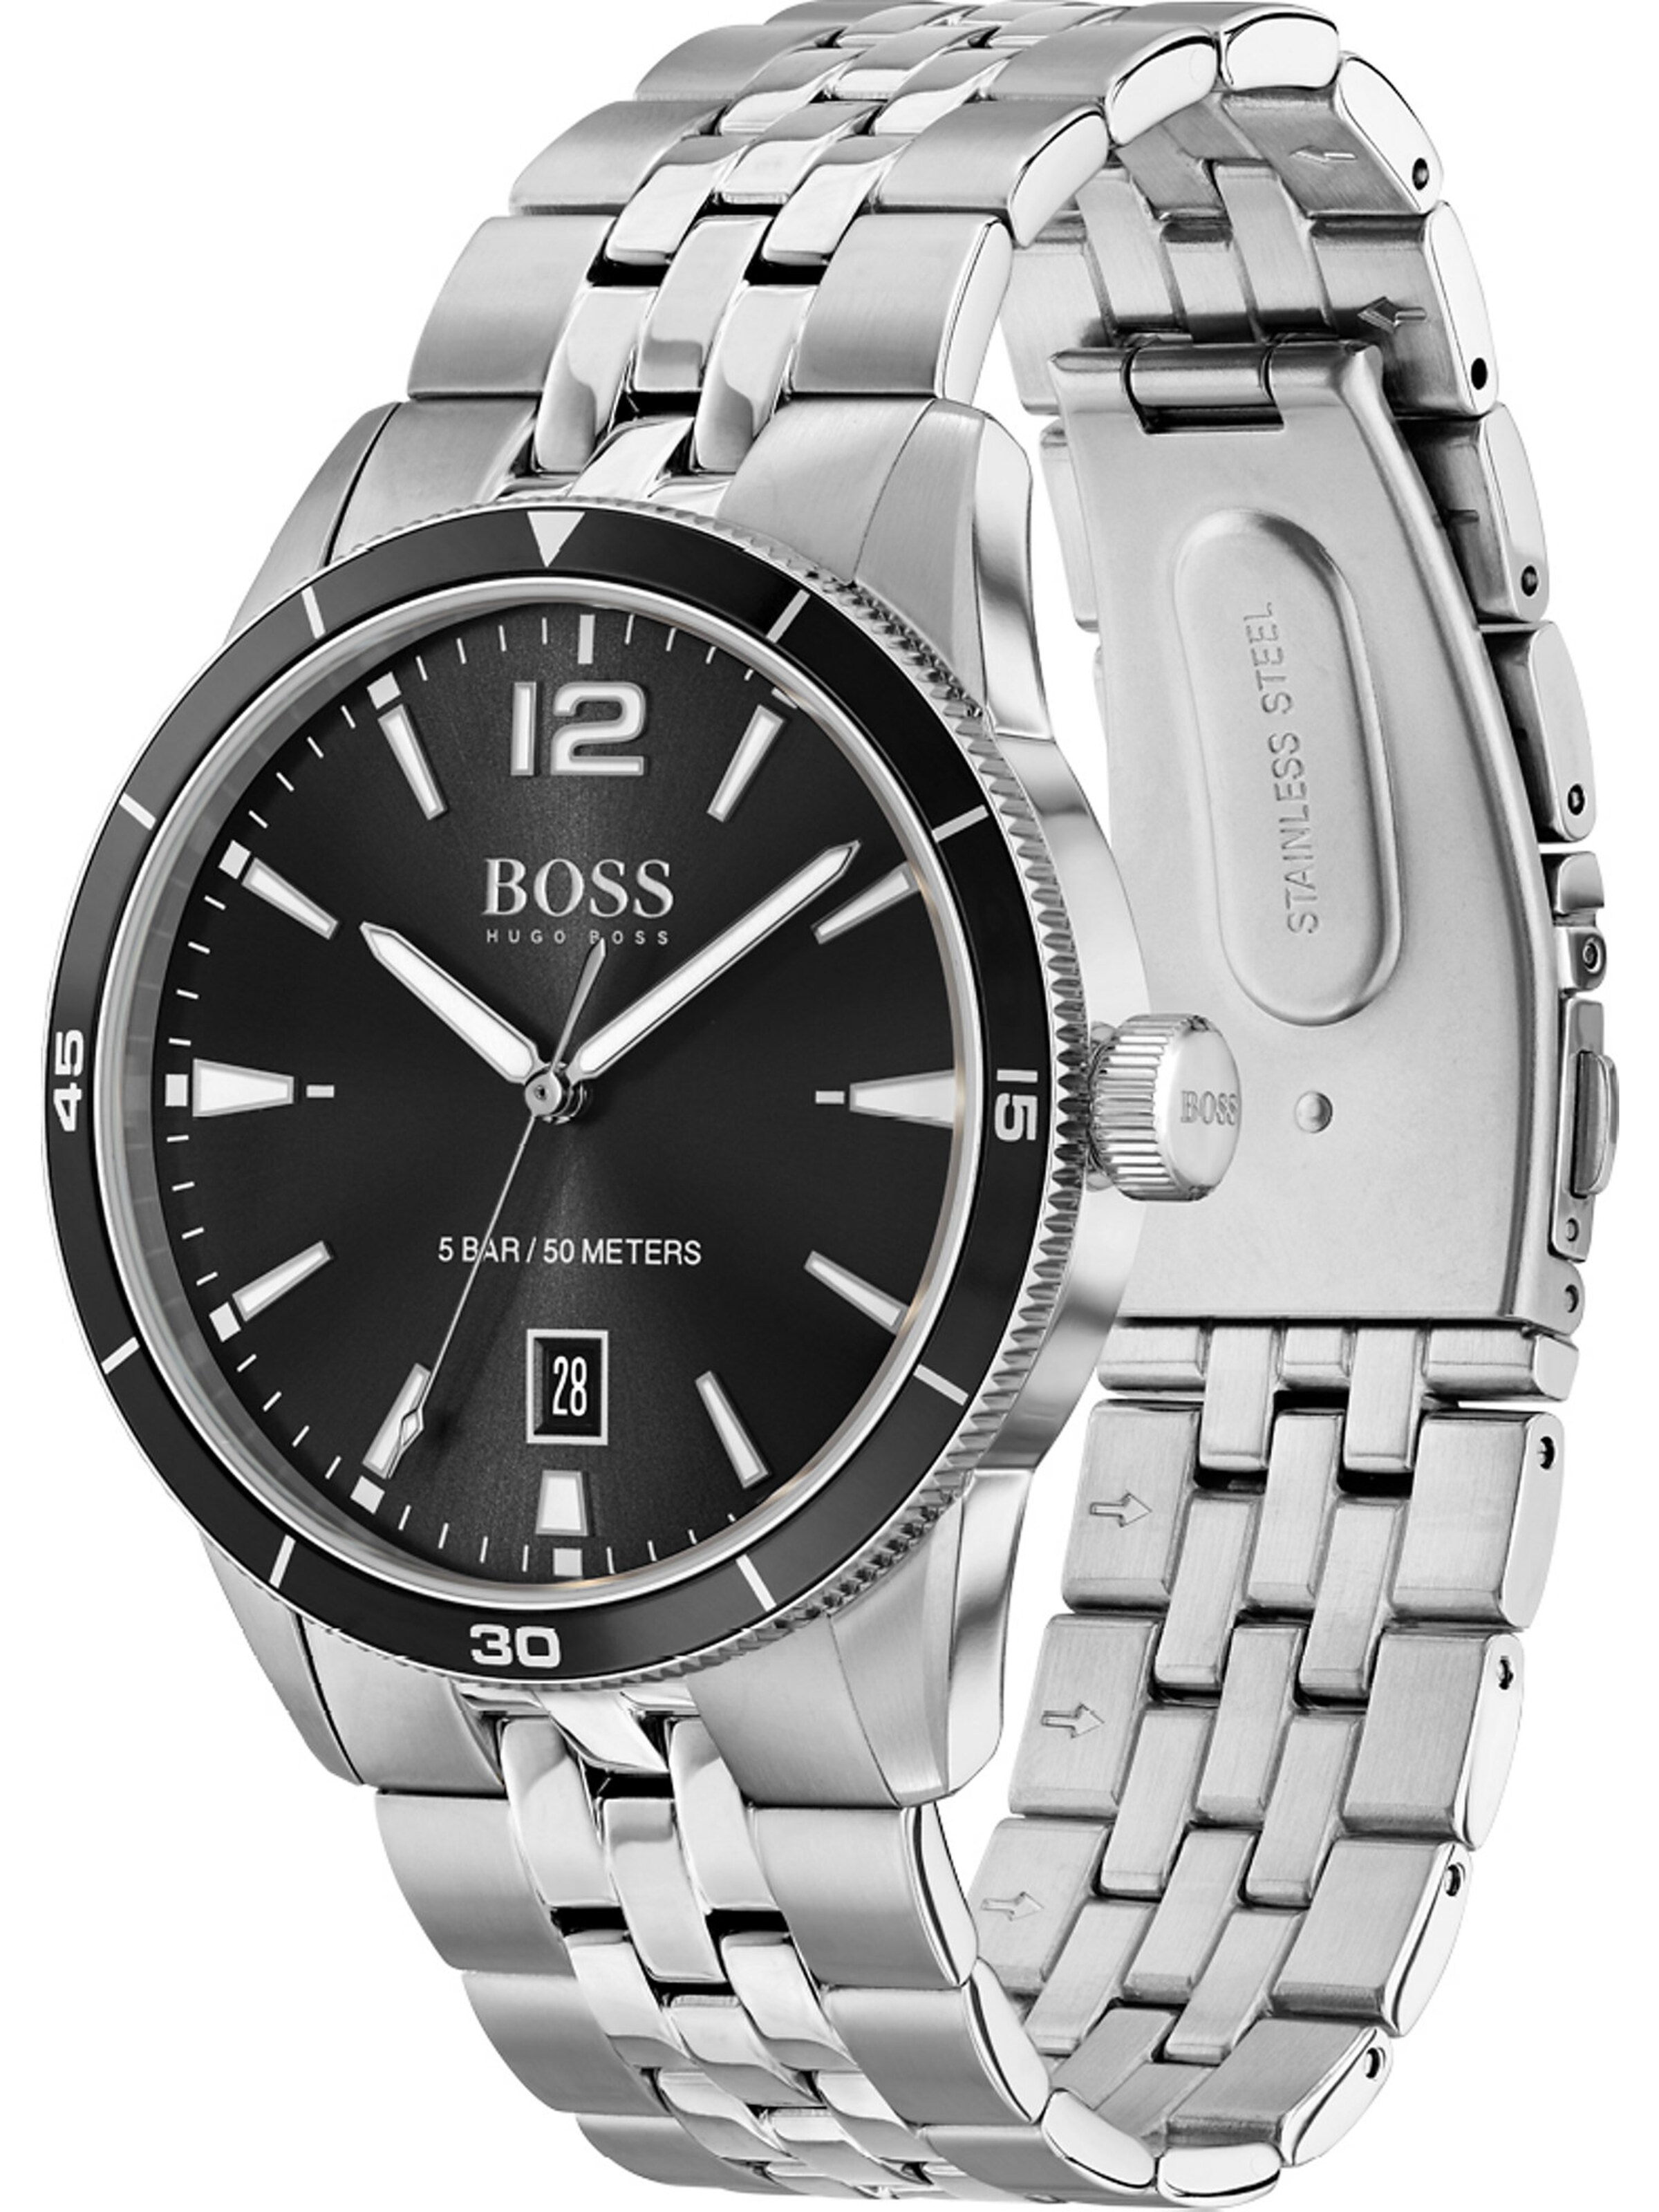 Männer Uhren BOSS Orange Analoguhr in Silber - FS40063